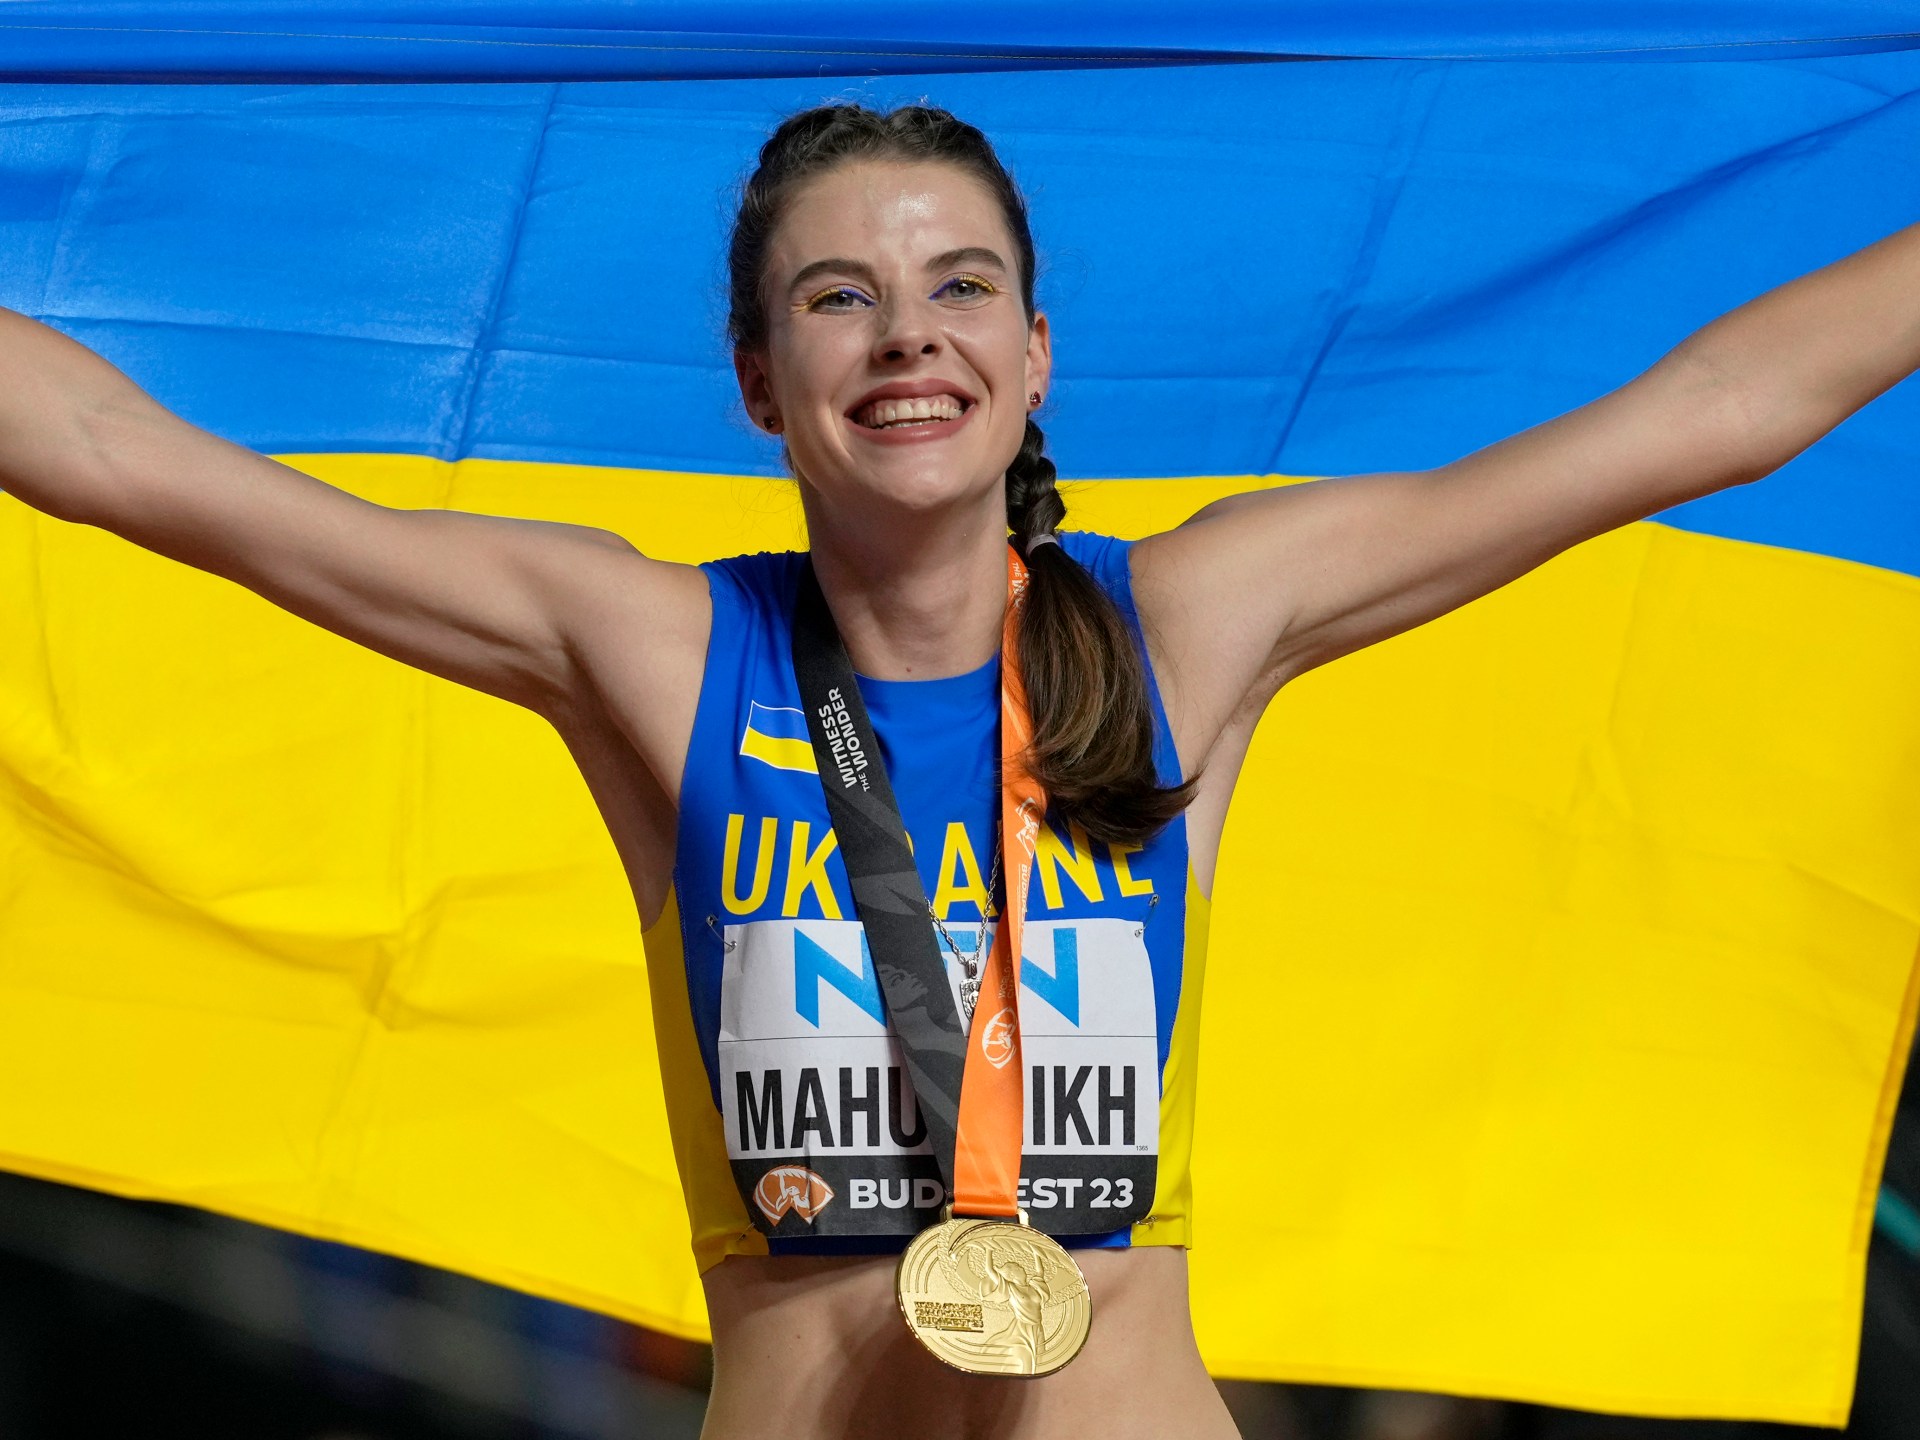 Світова легка атлетика: українка Махоших виграла золото, а голландка “вкрала” жіночу естафету |  Новини легкої атлетики